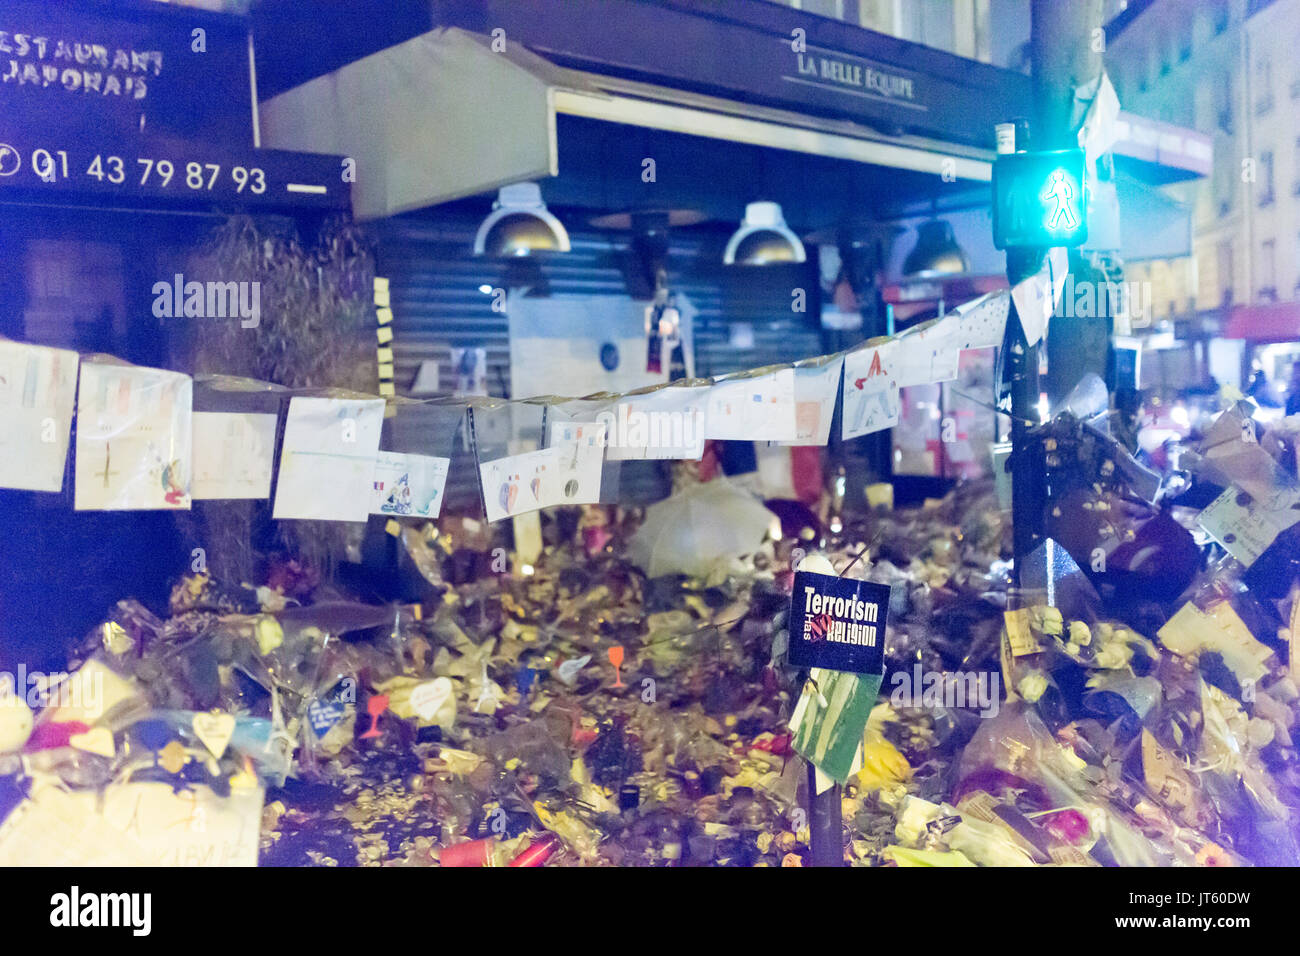 Le terrorisme n'a pas de religion sur la terrasse belle équipe. hommage aux victimes des attaques terroristes à Paris le 13 novembre 2015. Banque D'Images